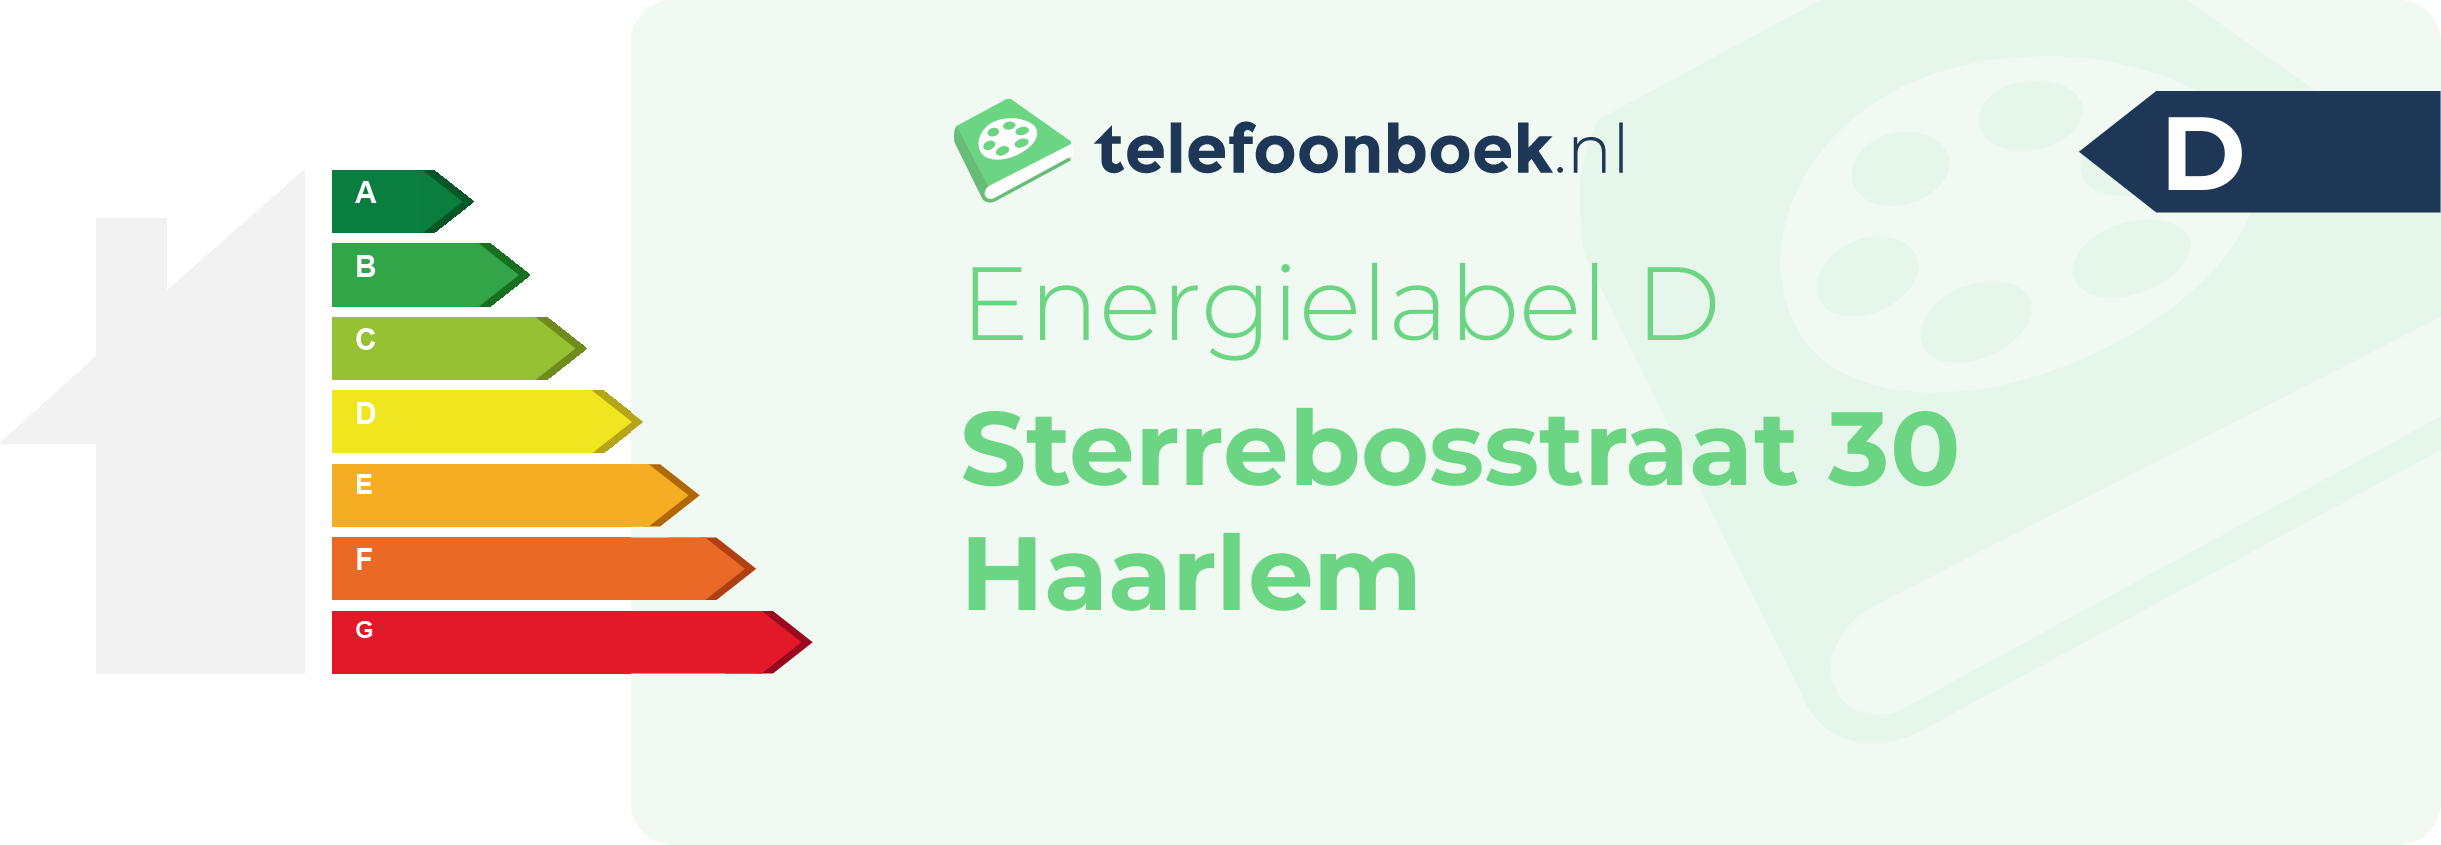 Energielabel Sterrebosstraat 30 Haarlem